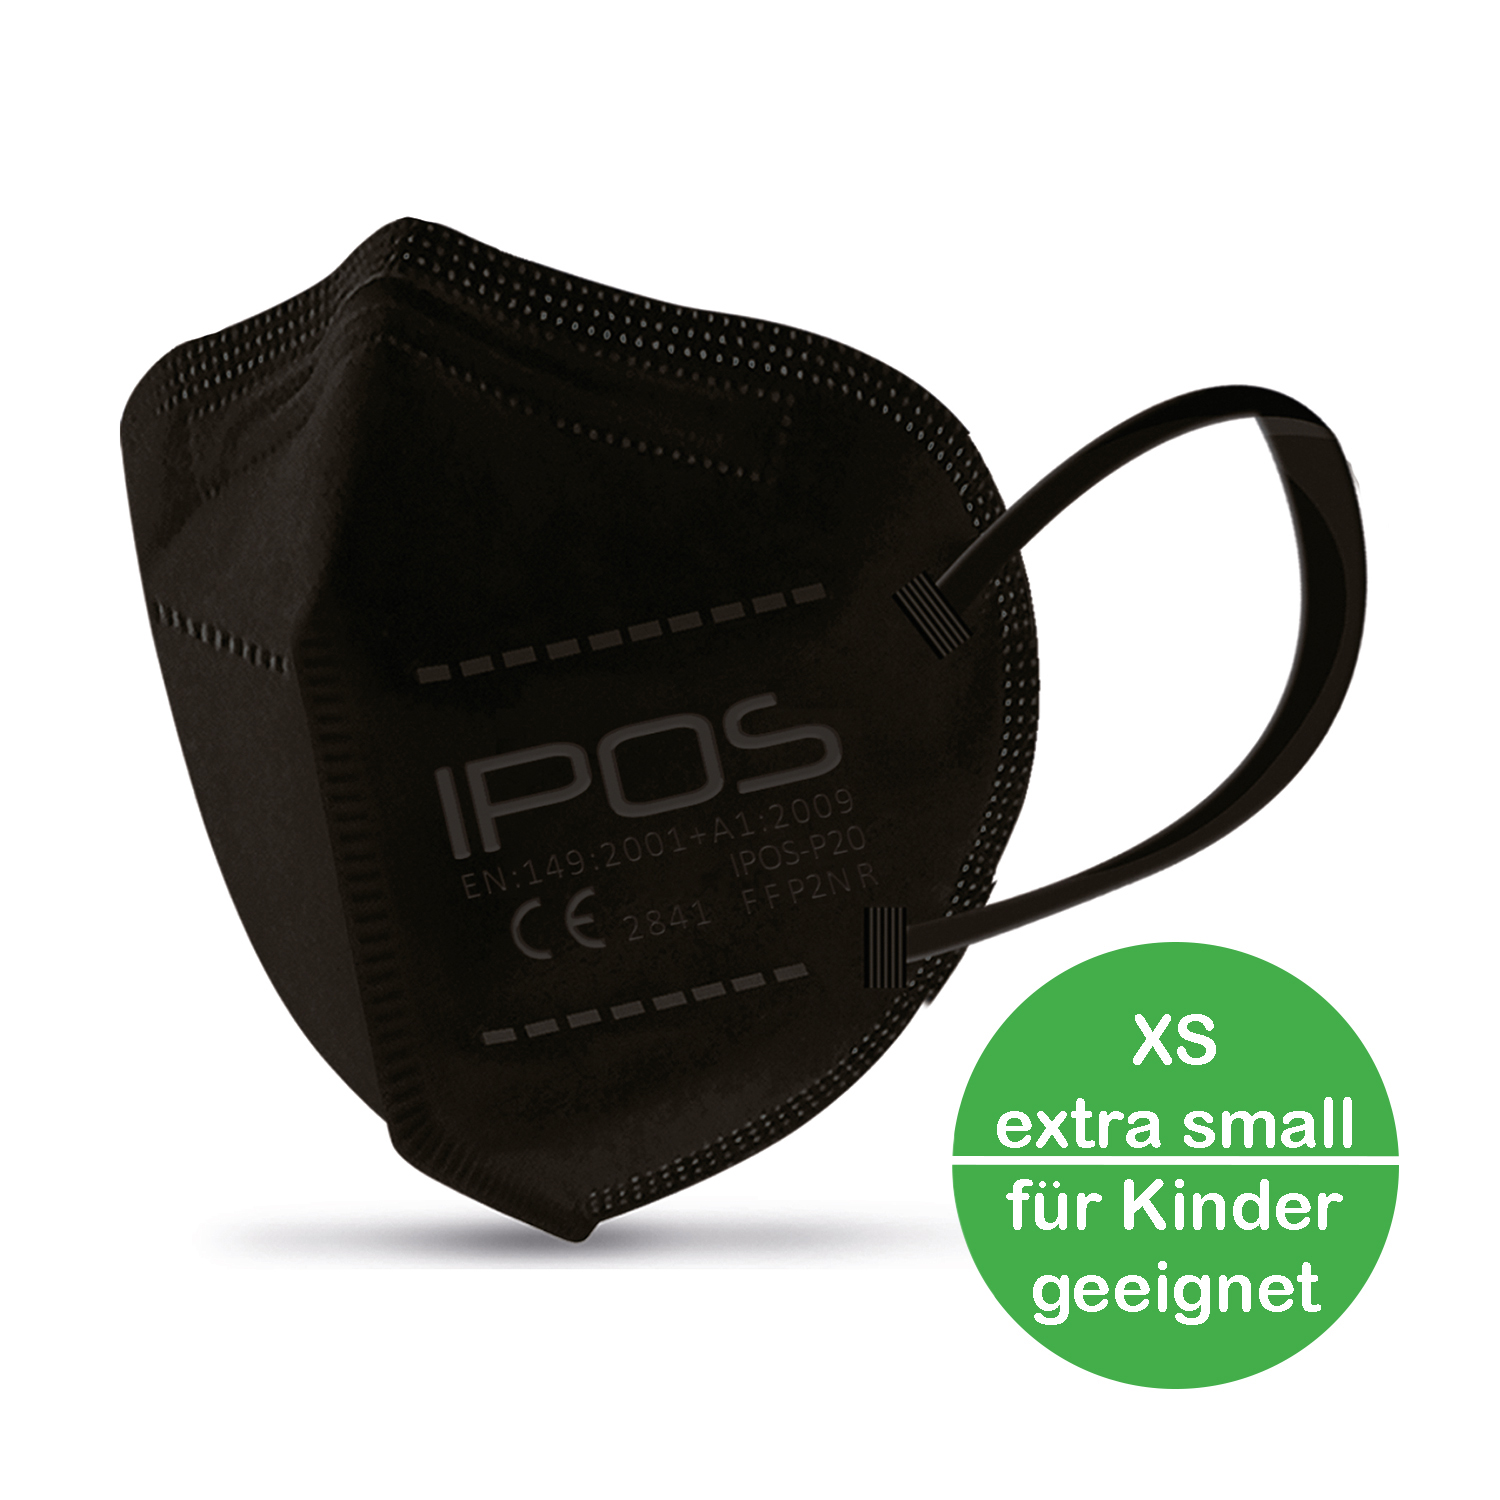 FFP2 Maske extra small XS Kindermaske verschiedene Farben 10 Stück IPOS Atemschutzmaske